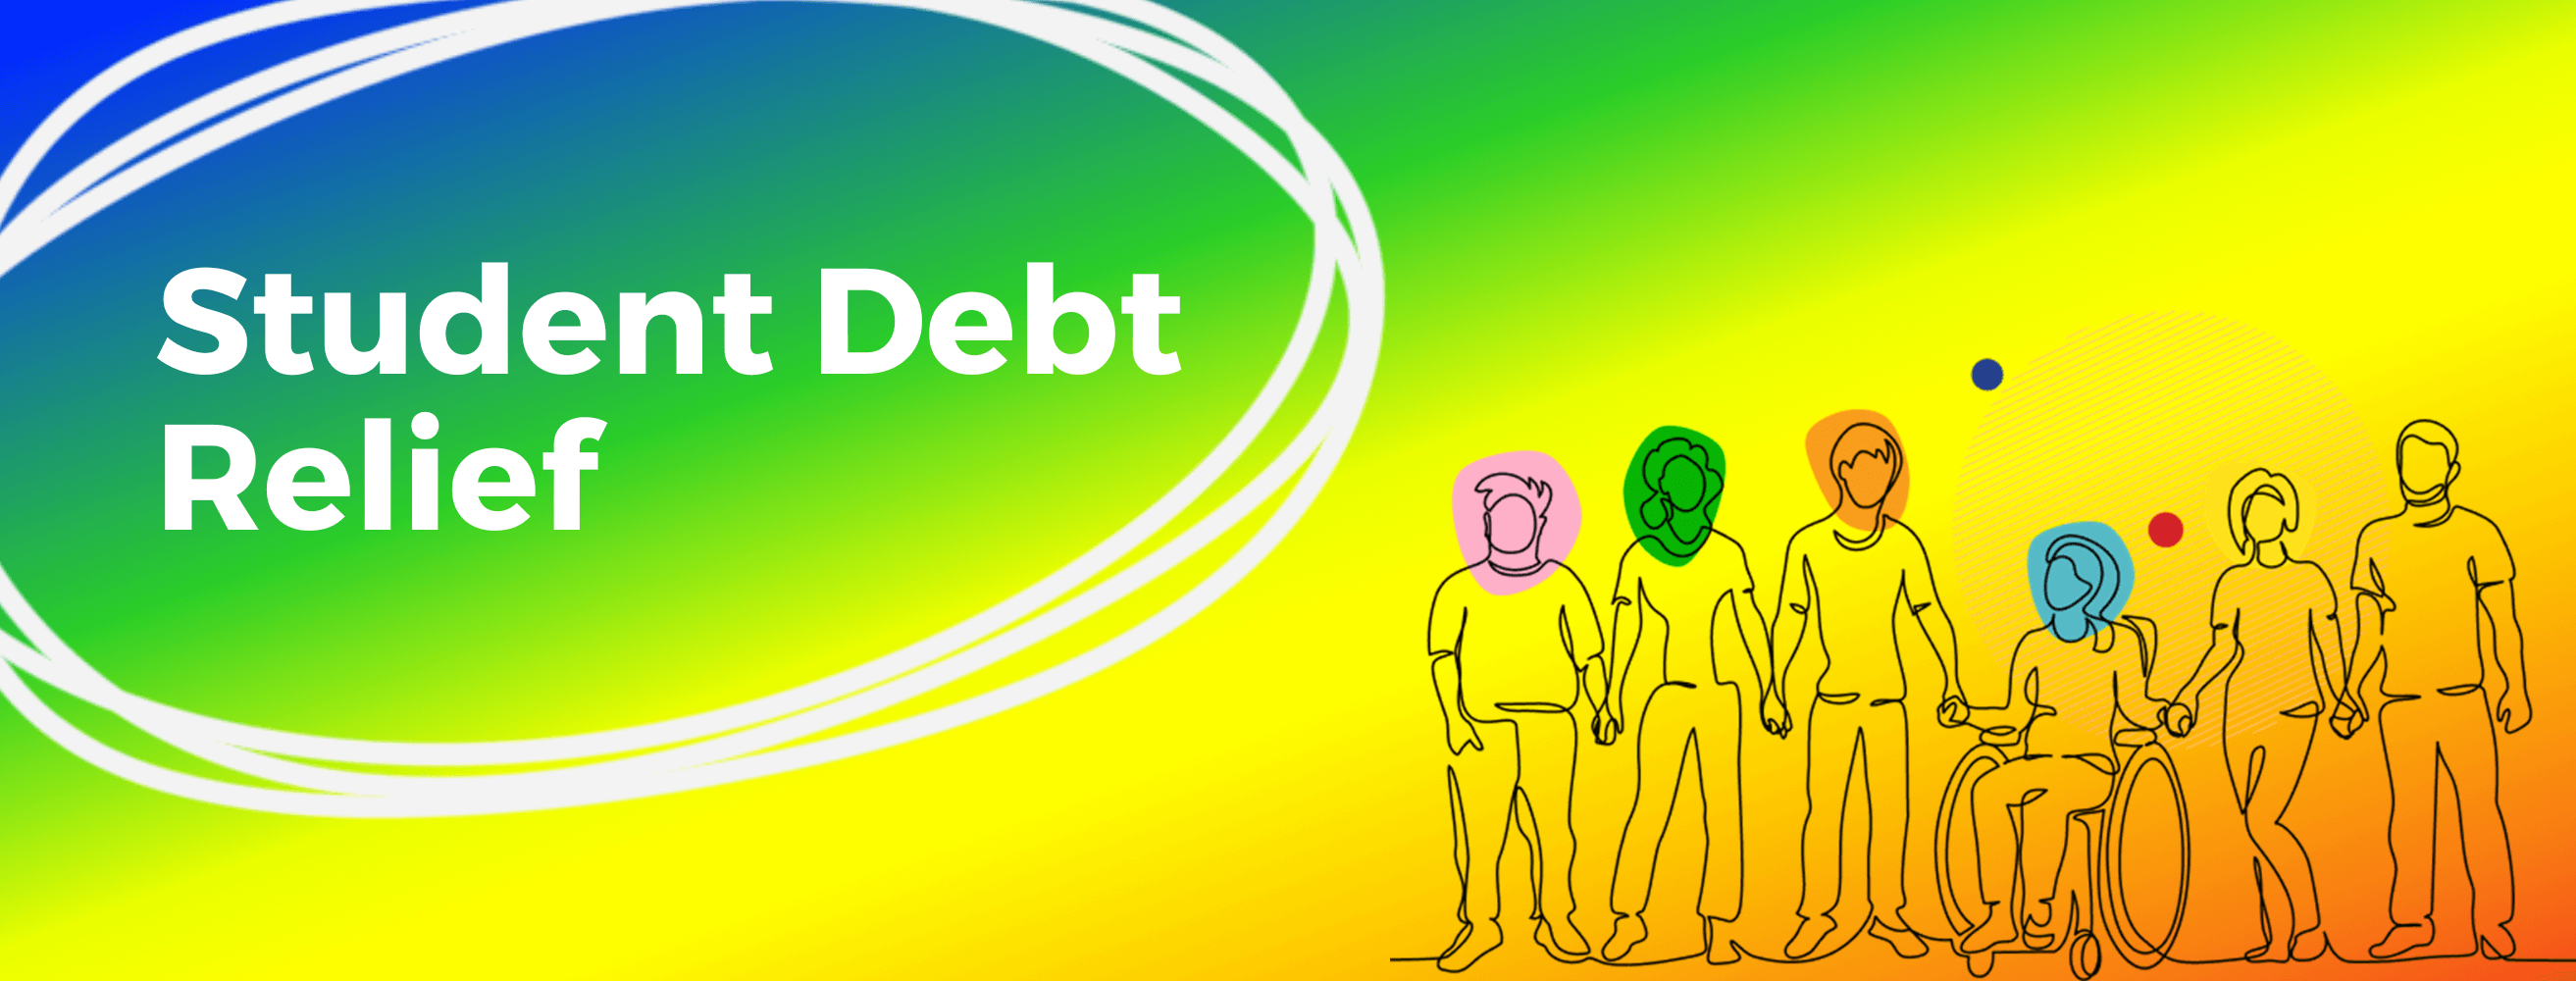 Student Debt Relief (1)